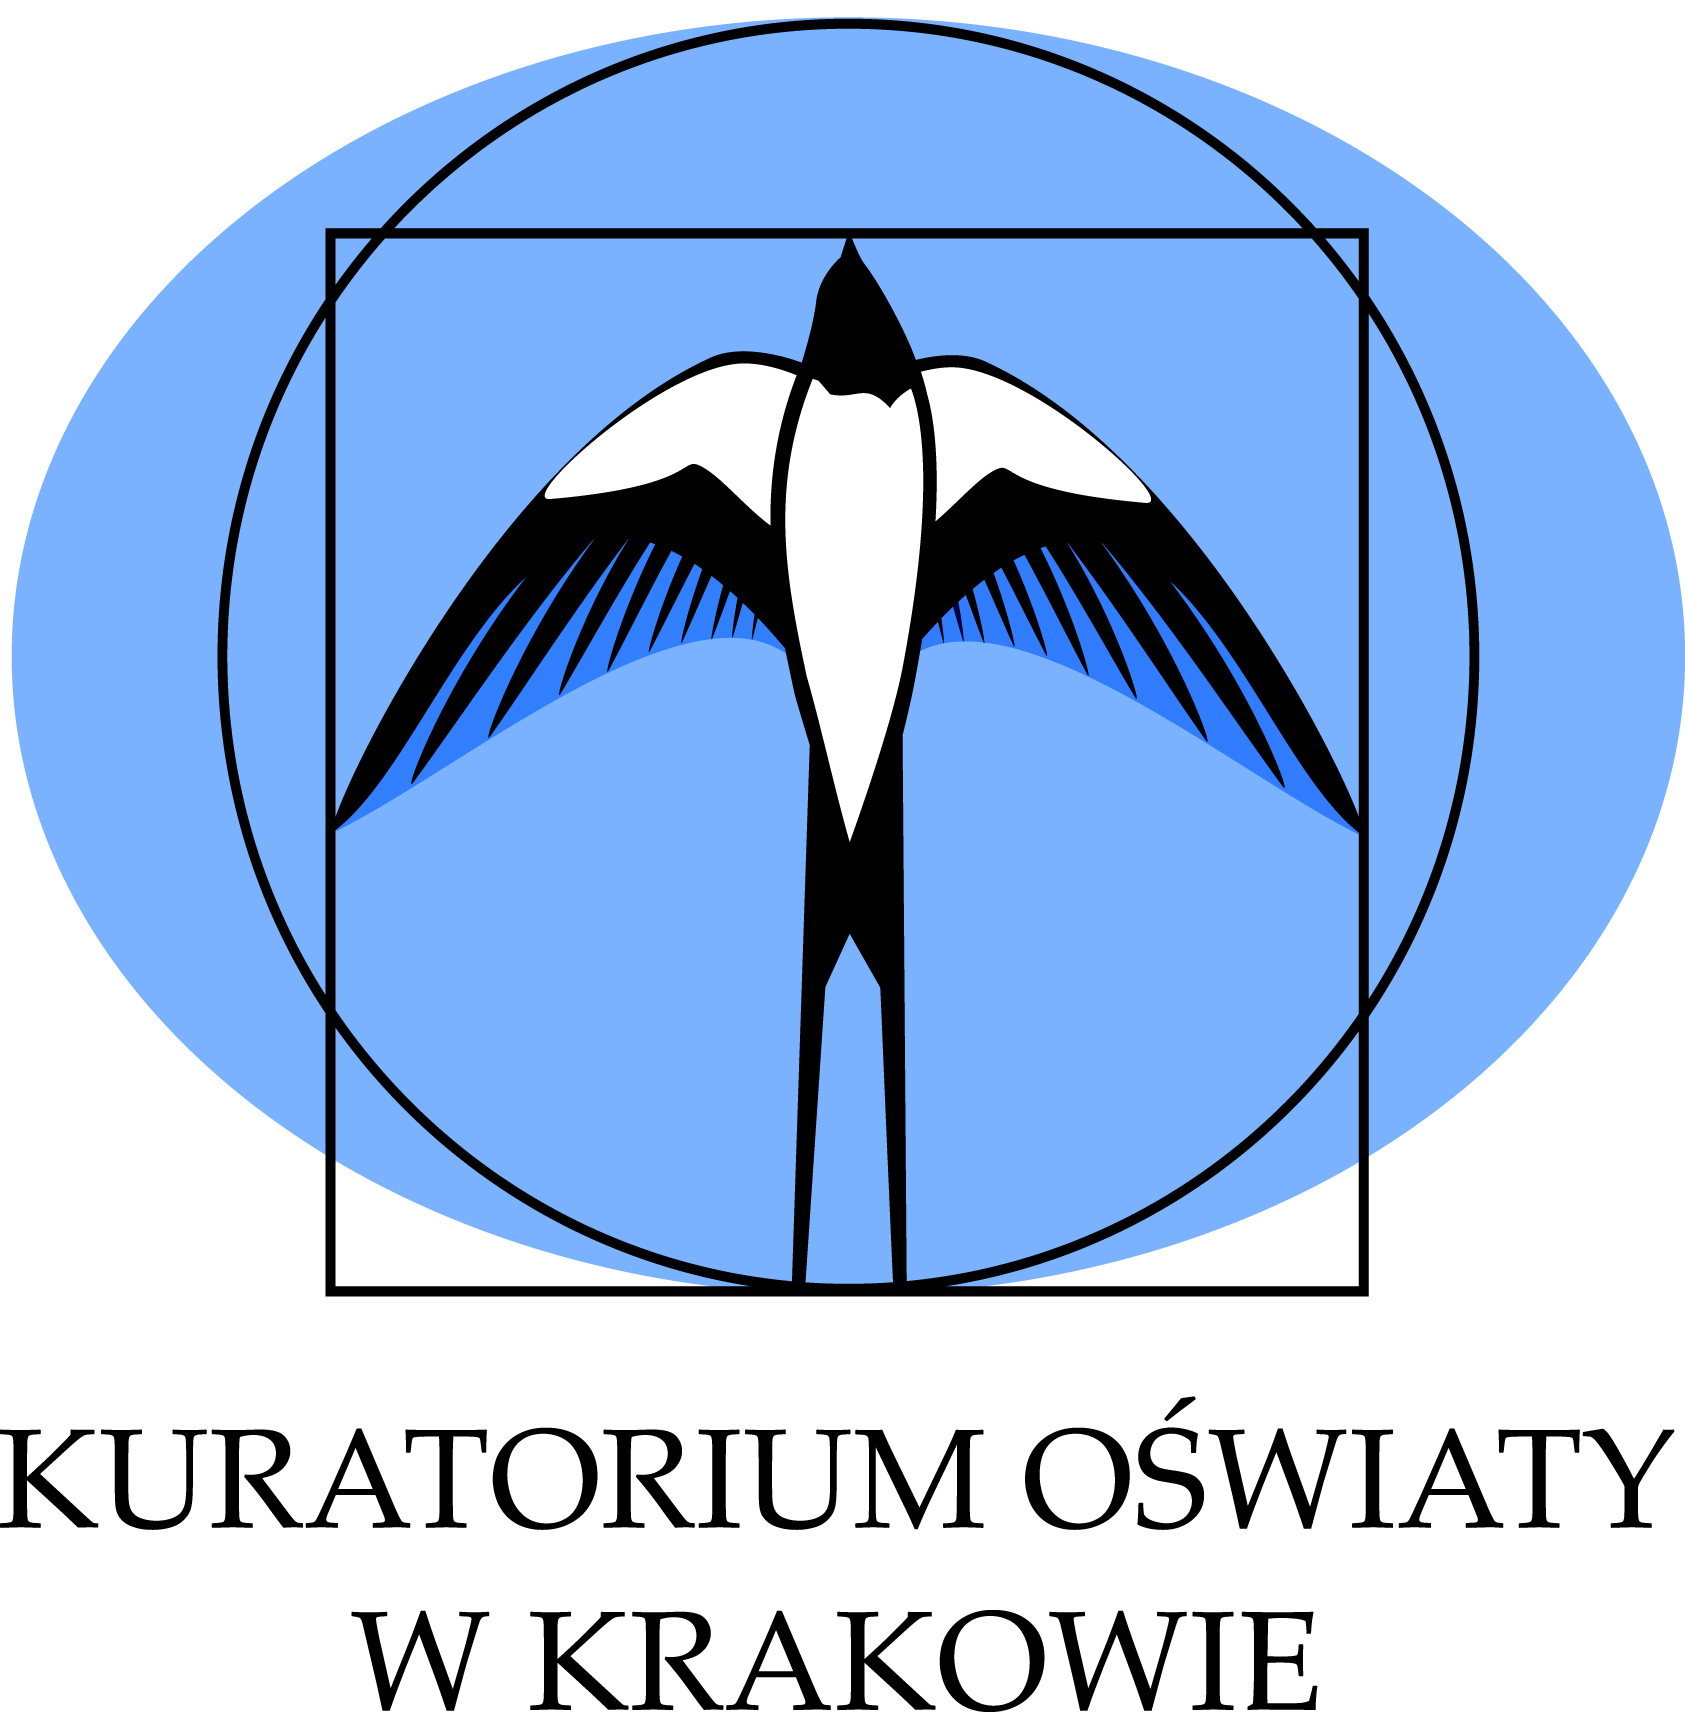 Kuratorium Oświaty w Krakowie.